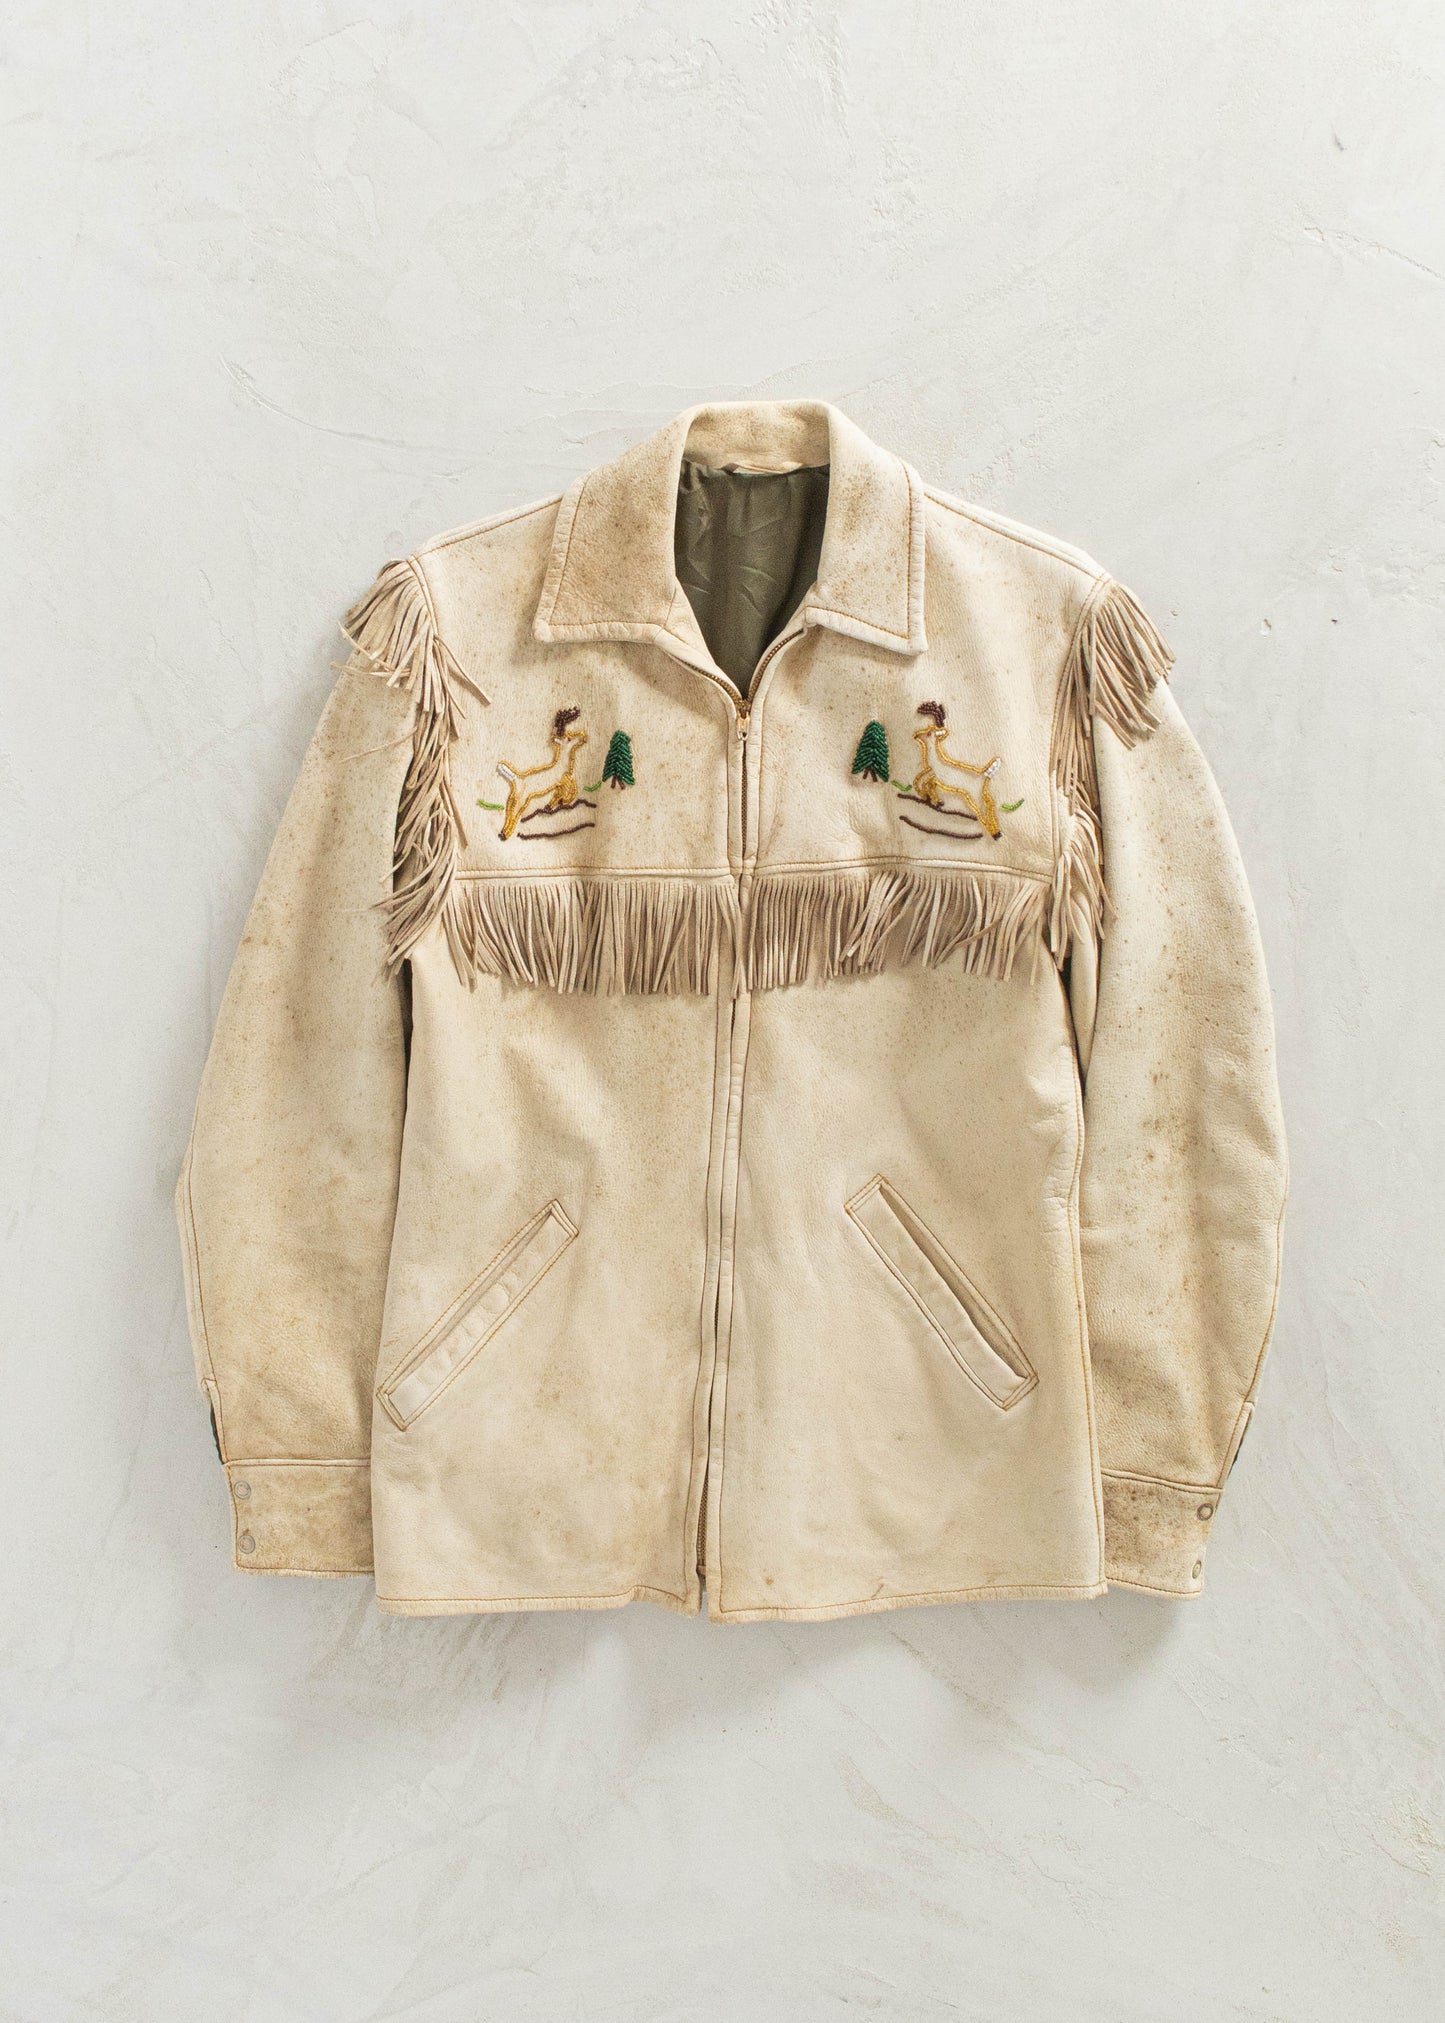 Vintage 1970s Beaded Leather Fringe Jacket Size 2XS/XS